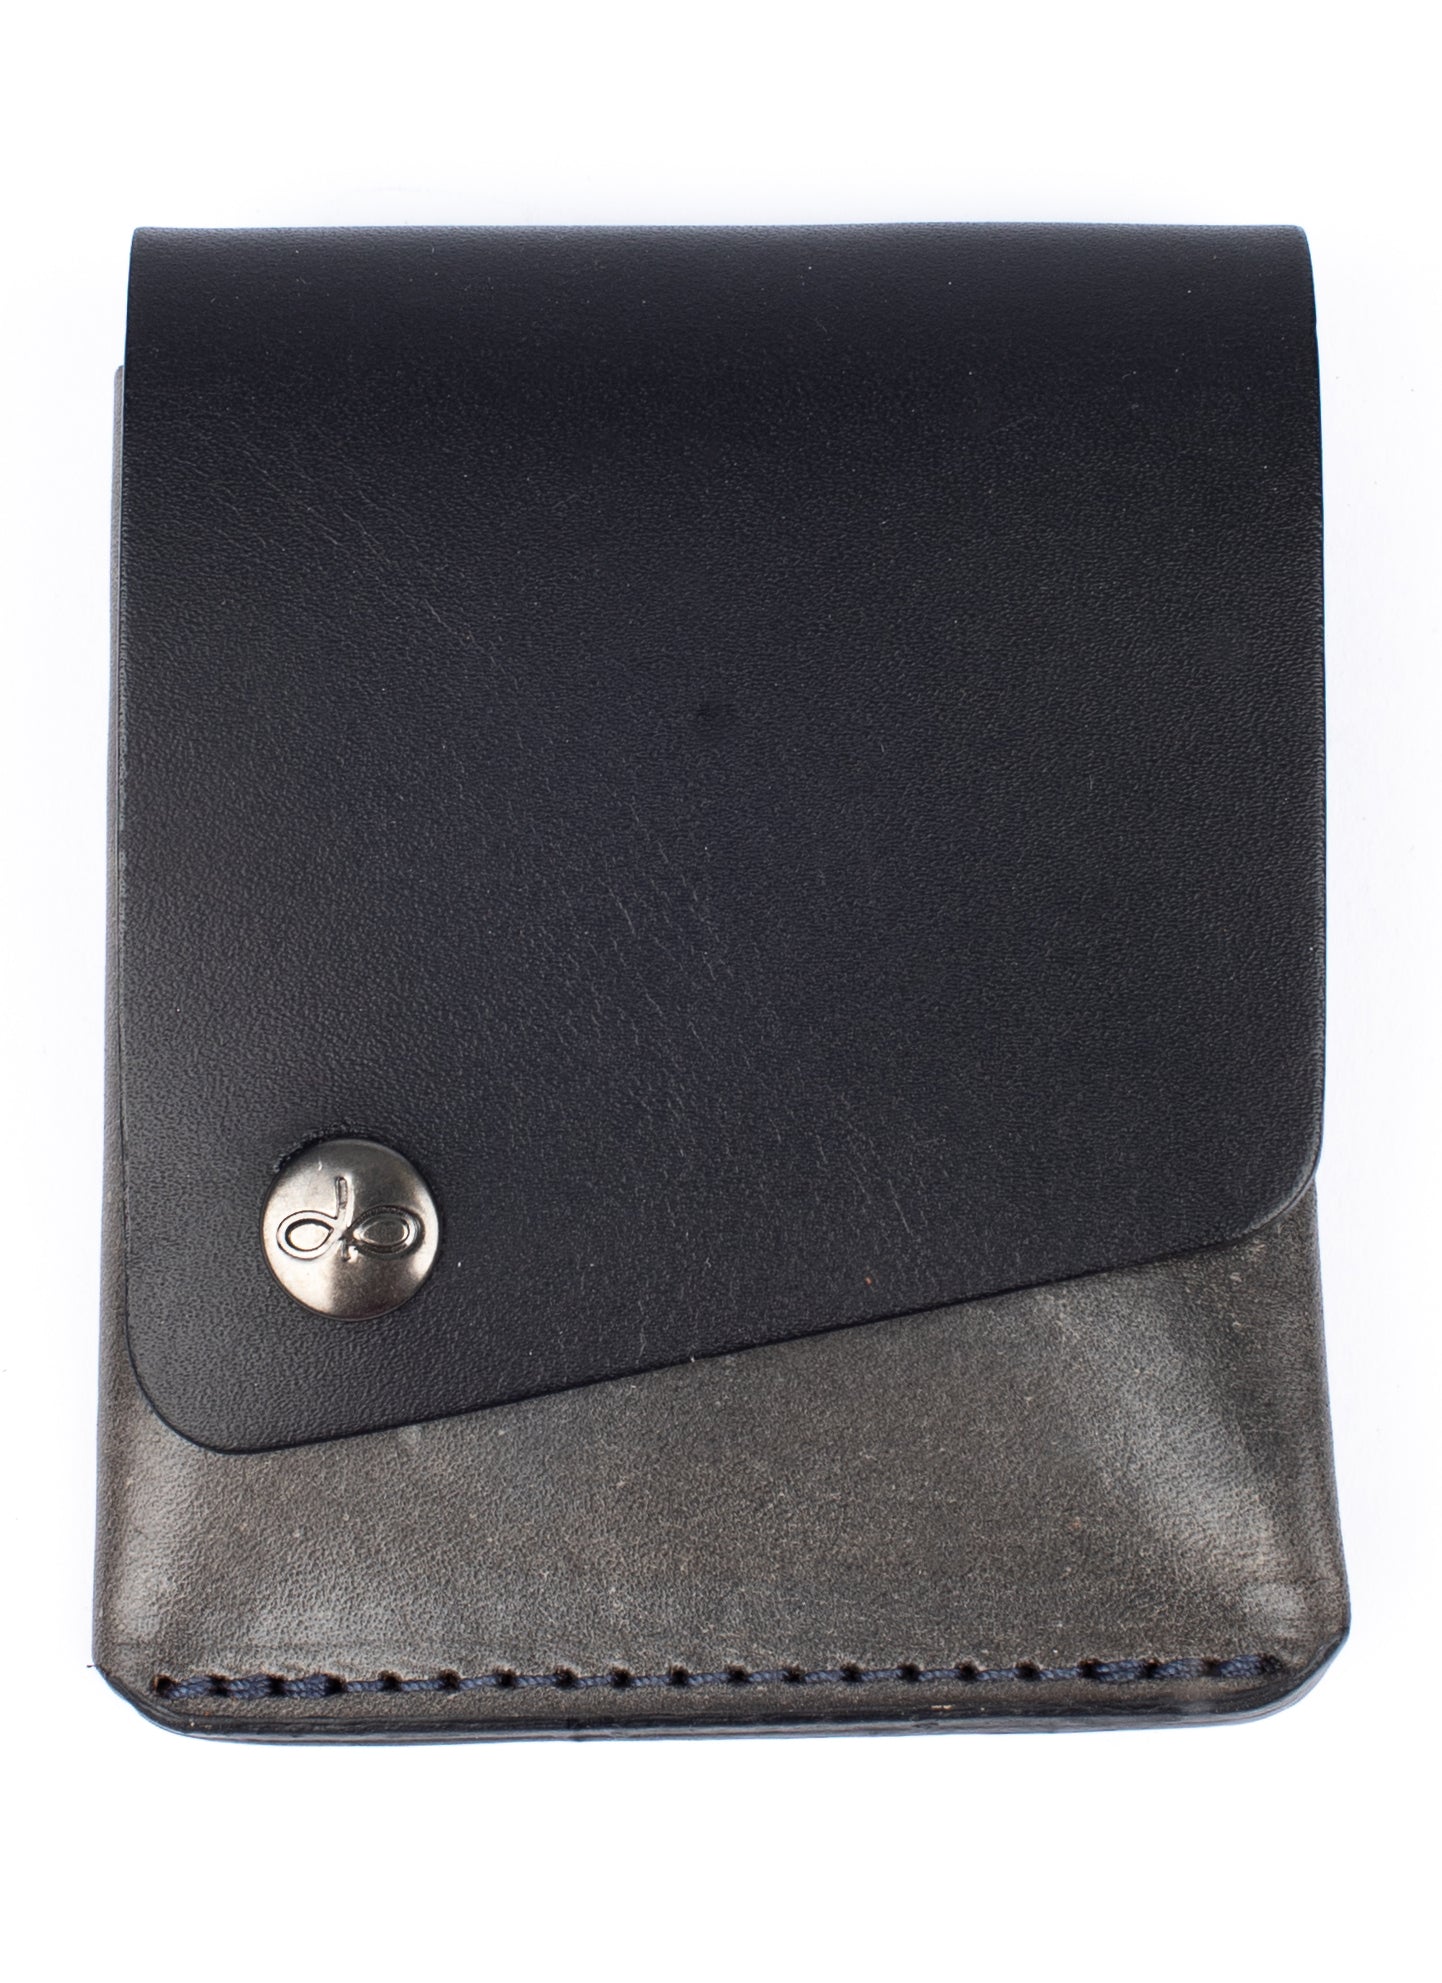 Piegato minimalist wallet black and vinagroon